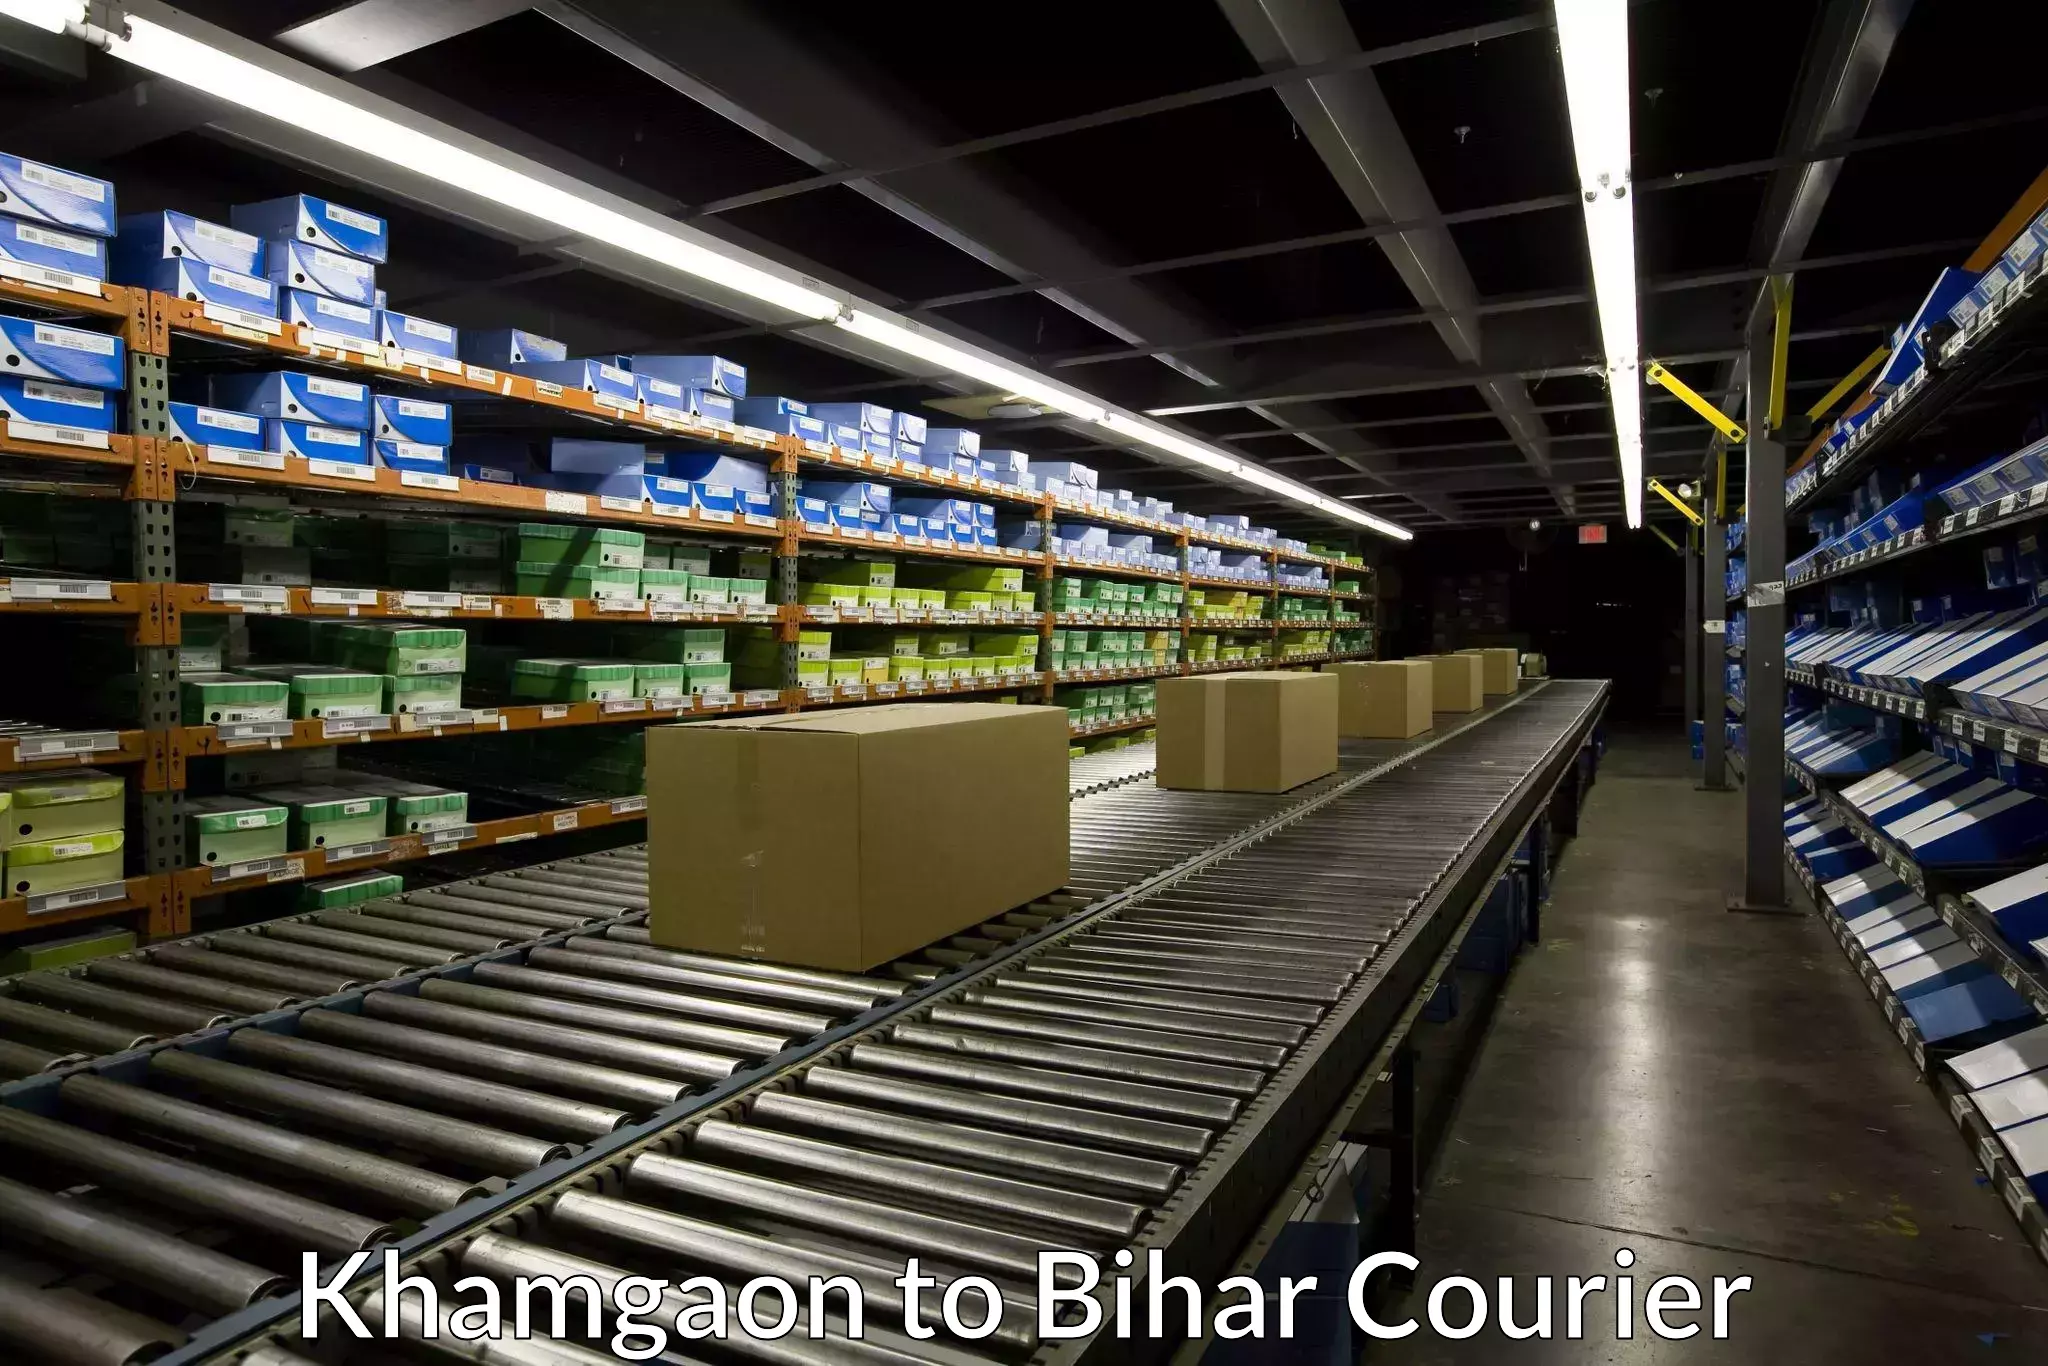 Urgent courier needs Khamgaon to Bihta